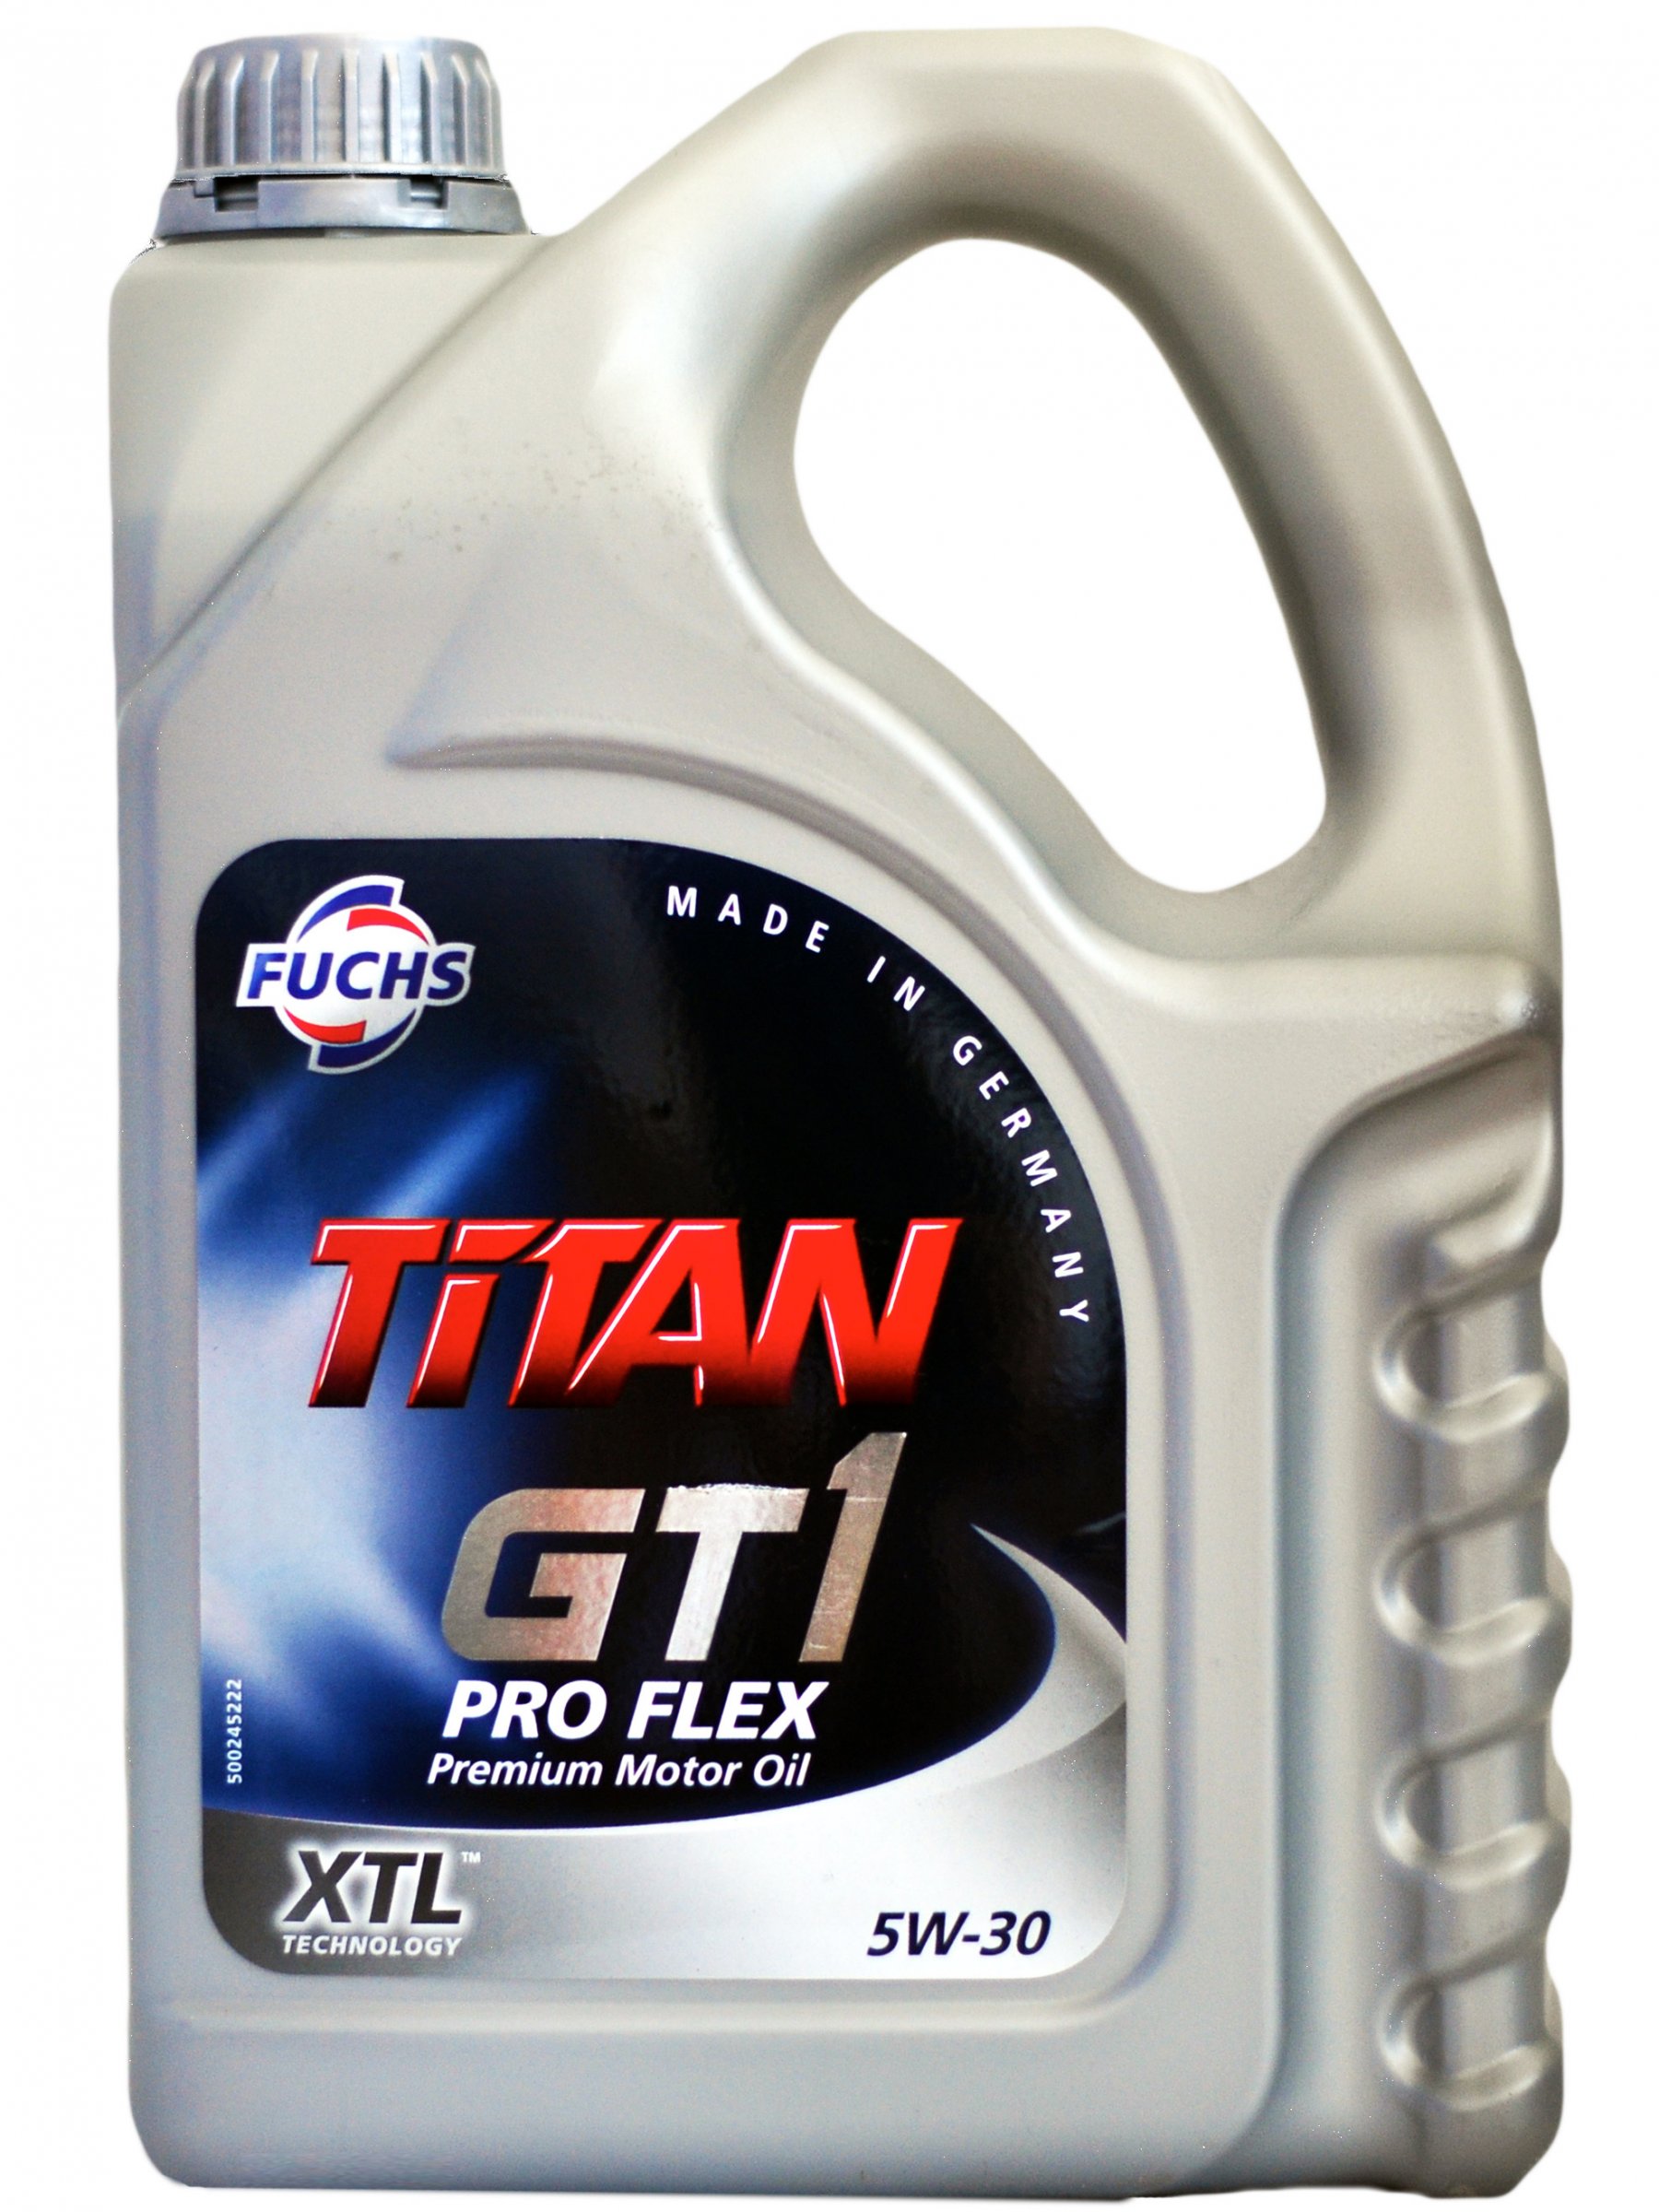 Fuchs Titan GT1 PRO FLEX XTL 5w-30